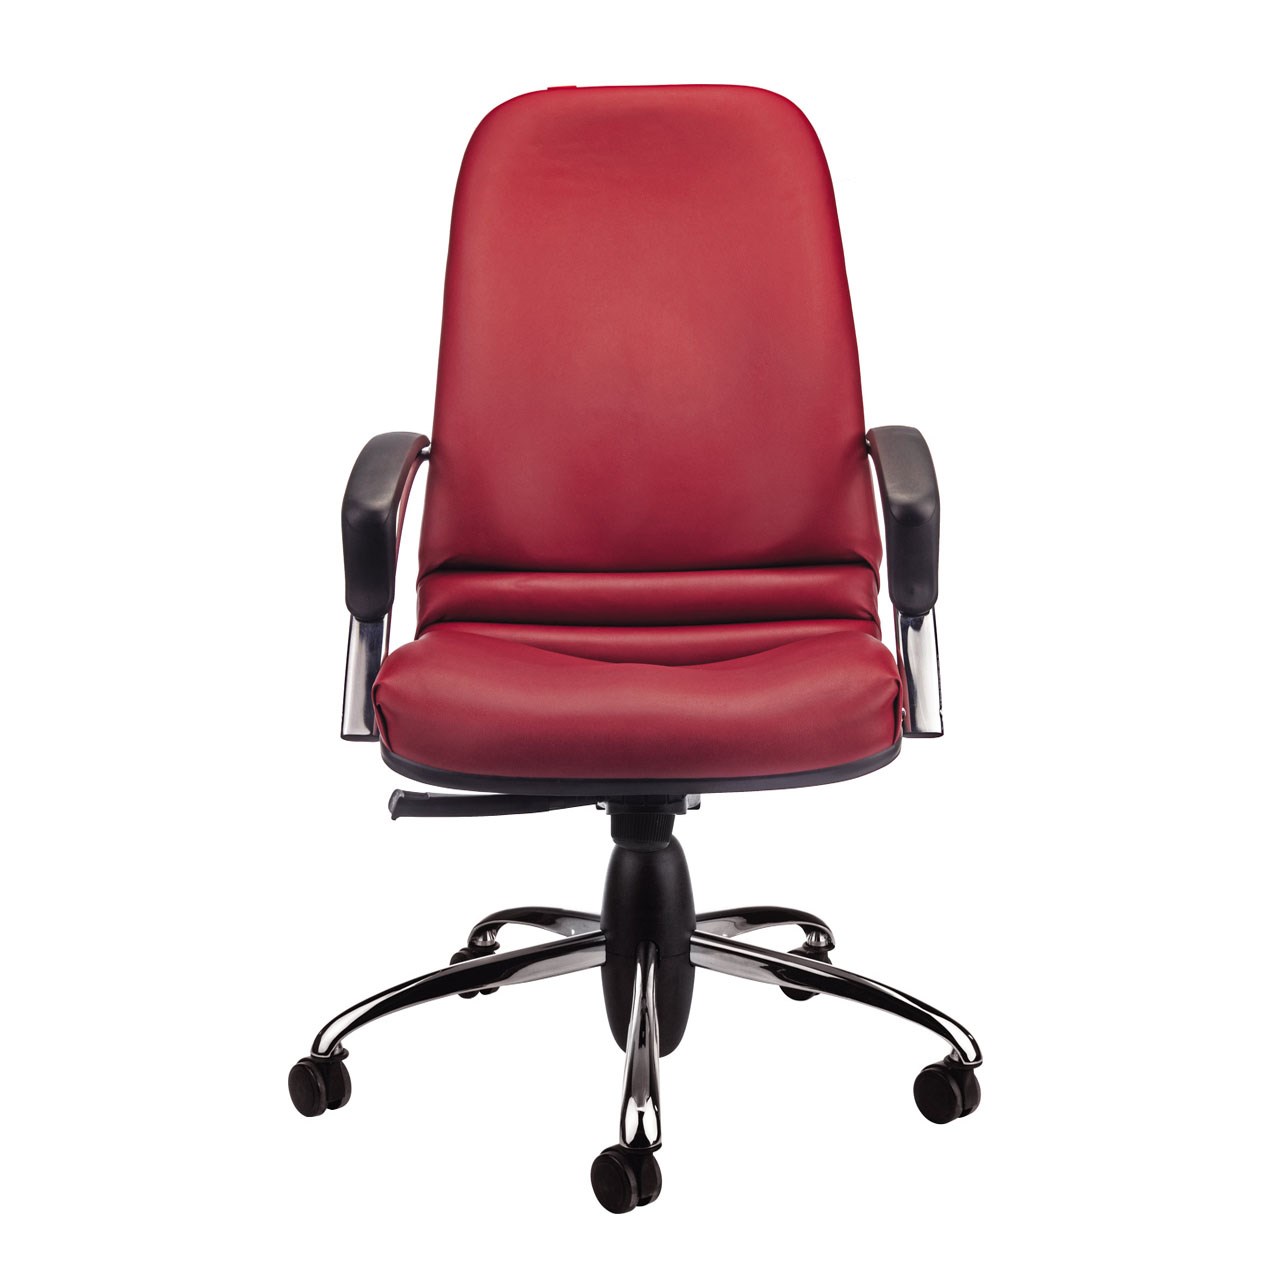 صندلی اداری نیلپر مدل SM900e چرمی